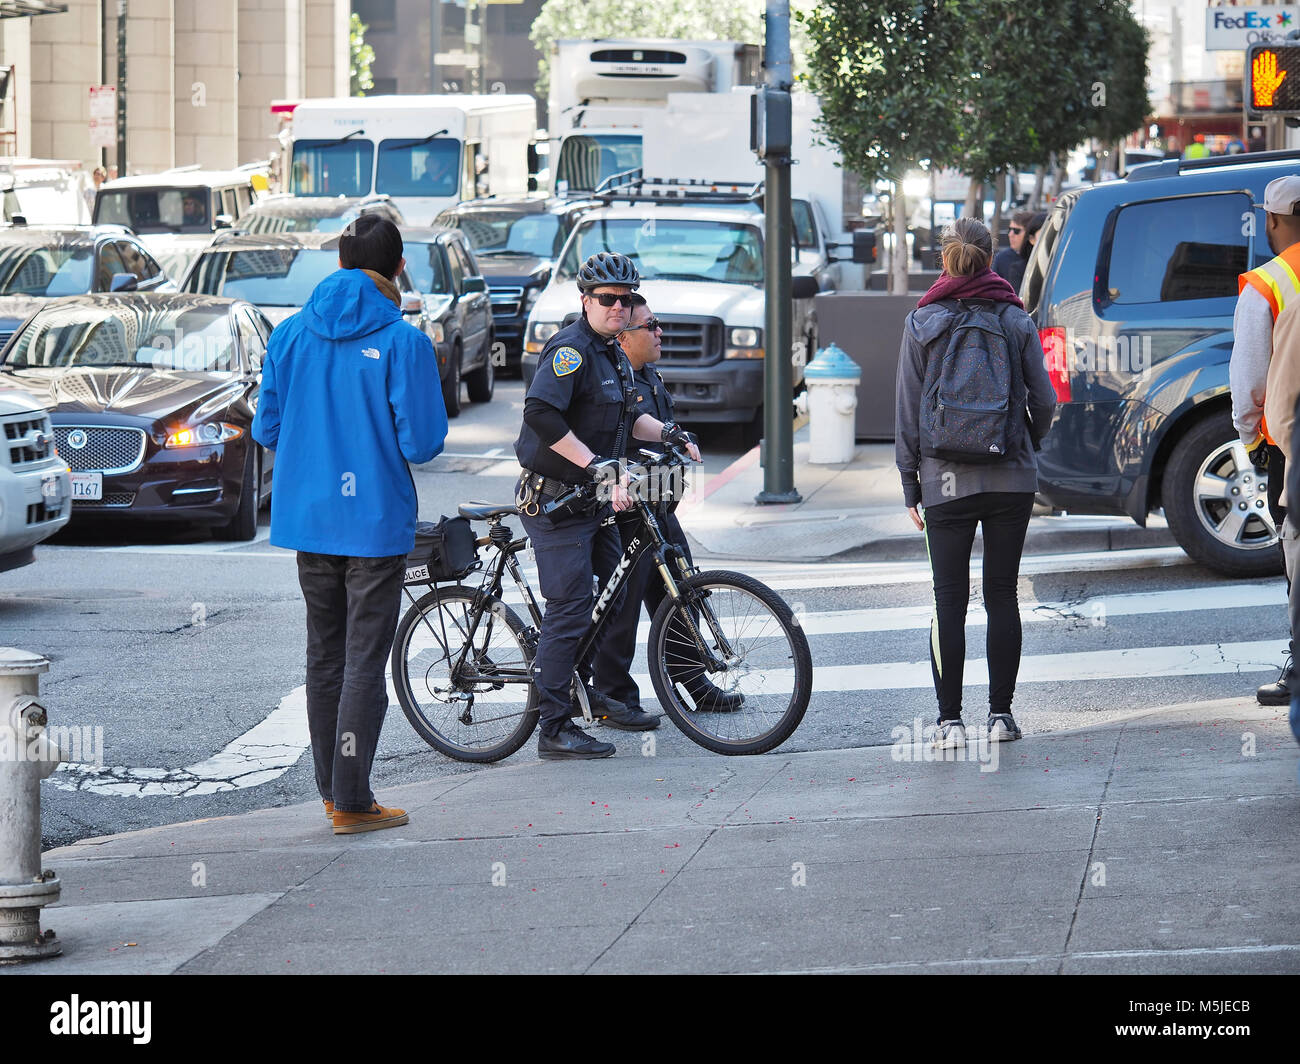 Dos oficiales del departamento de policía de San Francisco (uno en una bicicleta) sobre una calle, febrero de 2018 Foto de stock